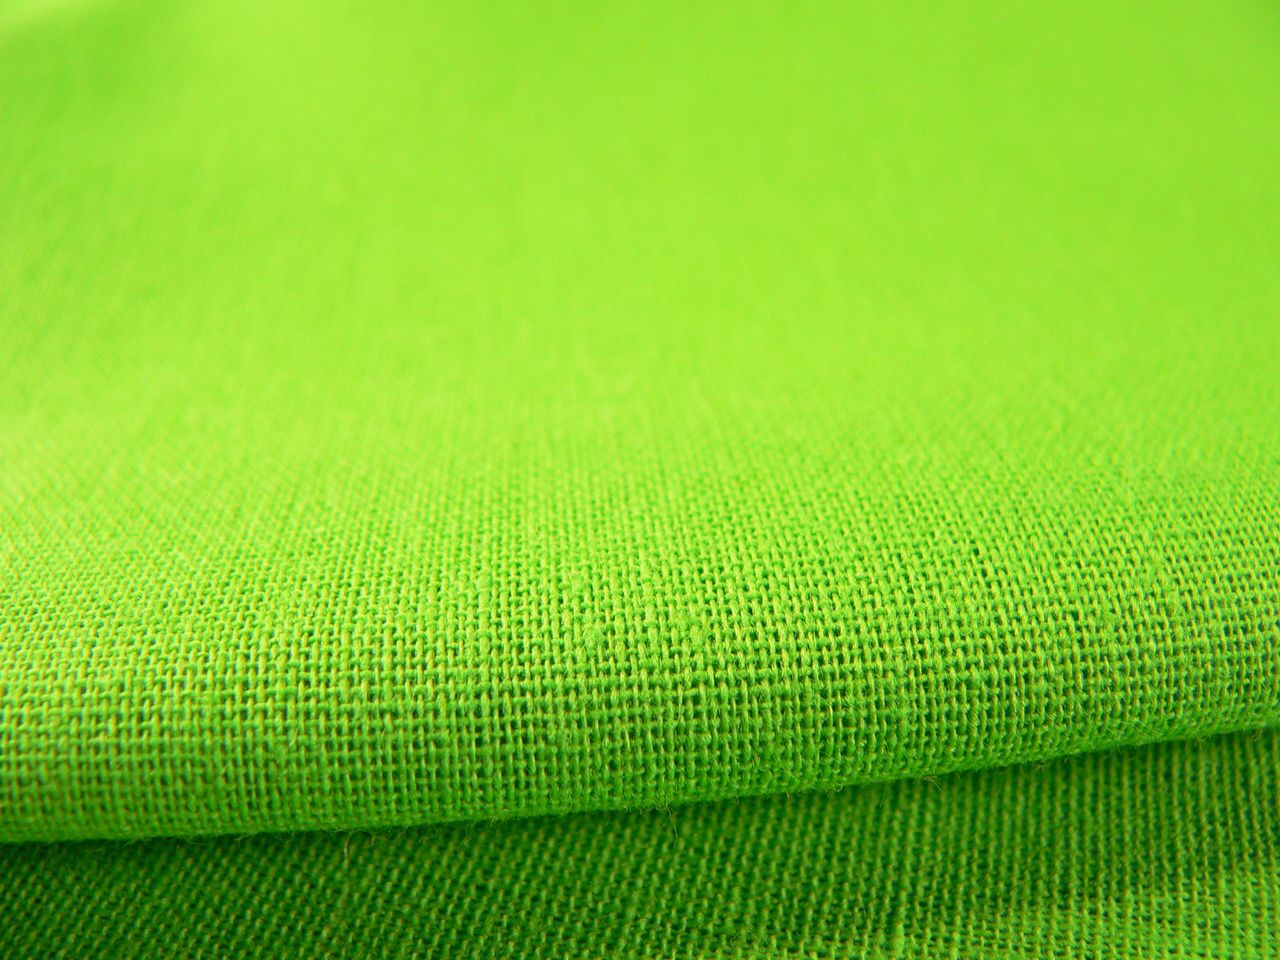 Хлопок зеленого цвета. Хлопчатая ткань бязь. Зеленая ткань. Салатовая ткань. Сукно хлопчатобумажное.